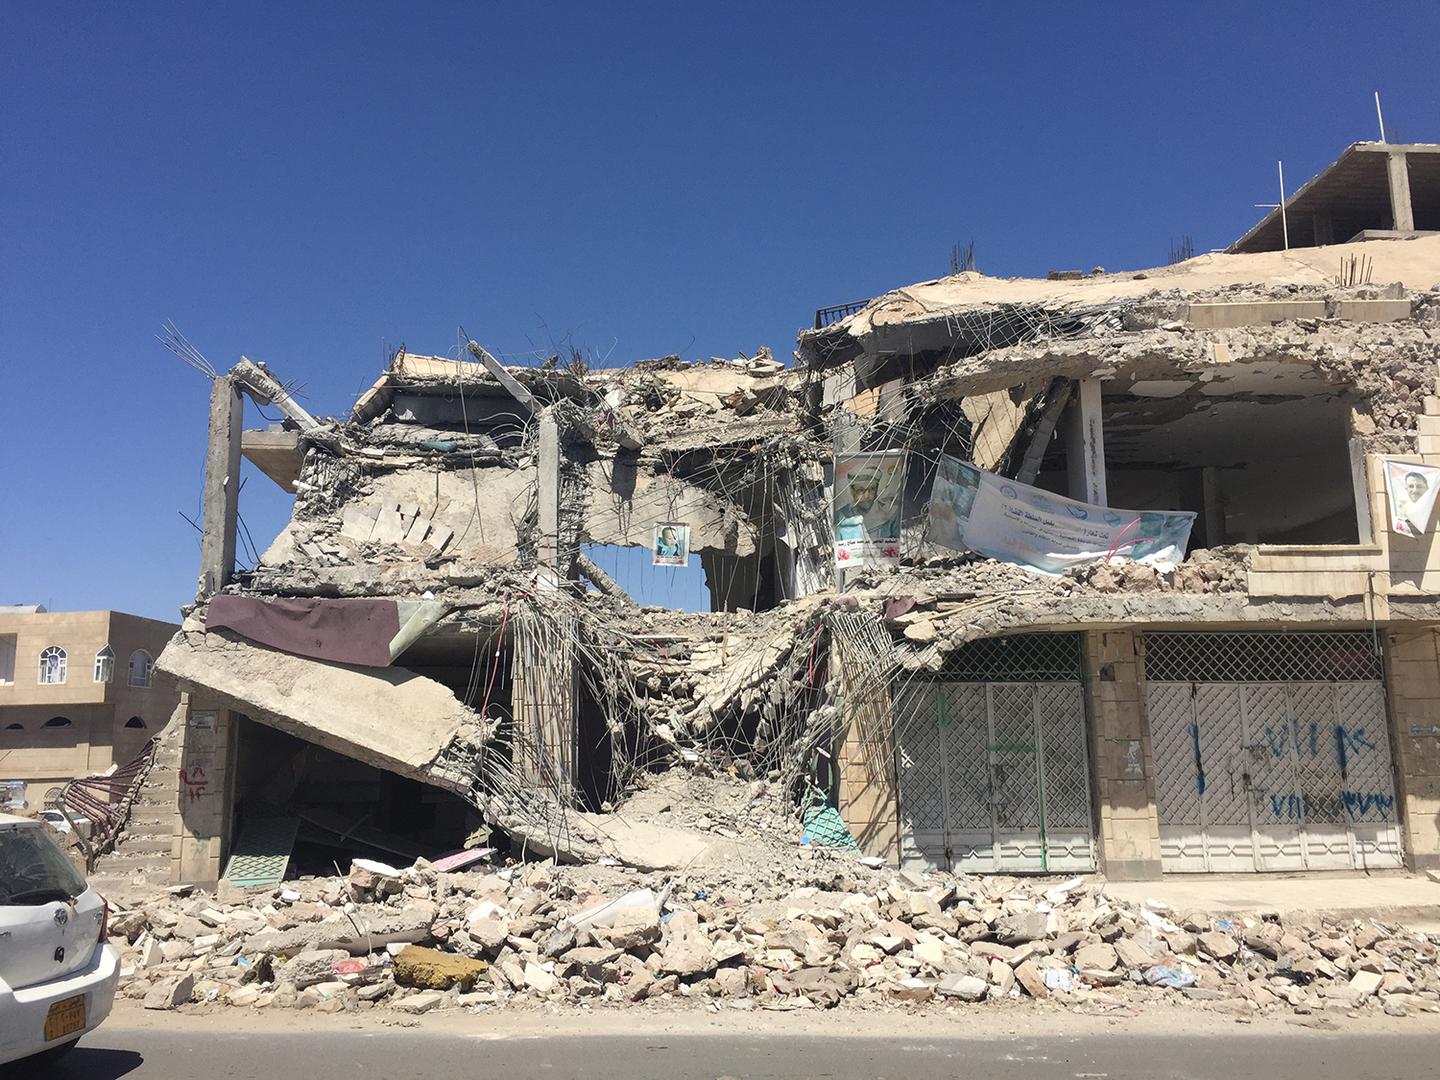 Les décombres de la maison du juge Yahya Muhammad Rubaid à Sanaa, au Yémen, suite à la frappe aérienne dévastatrice qui a tué le juge et quatre membres de sa famille le 25 janvier 2016.